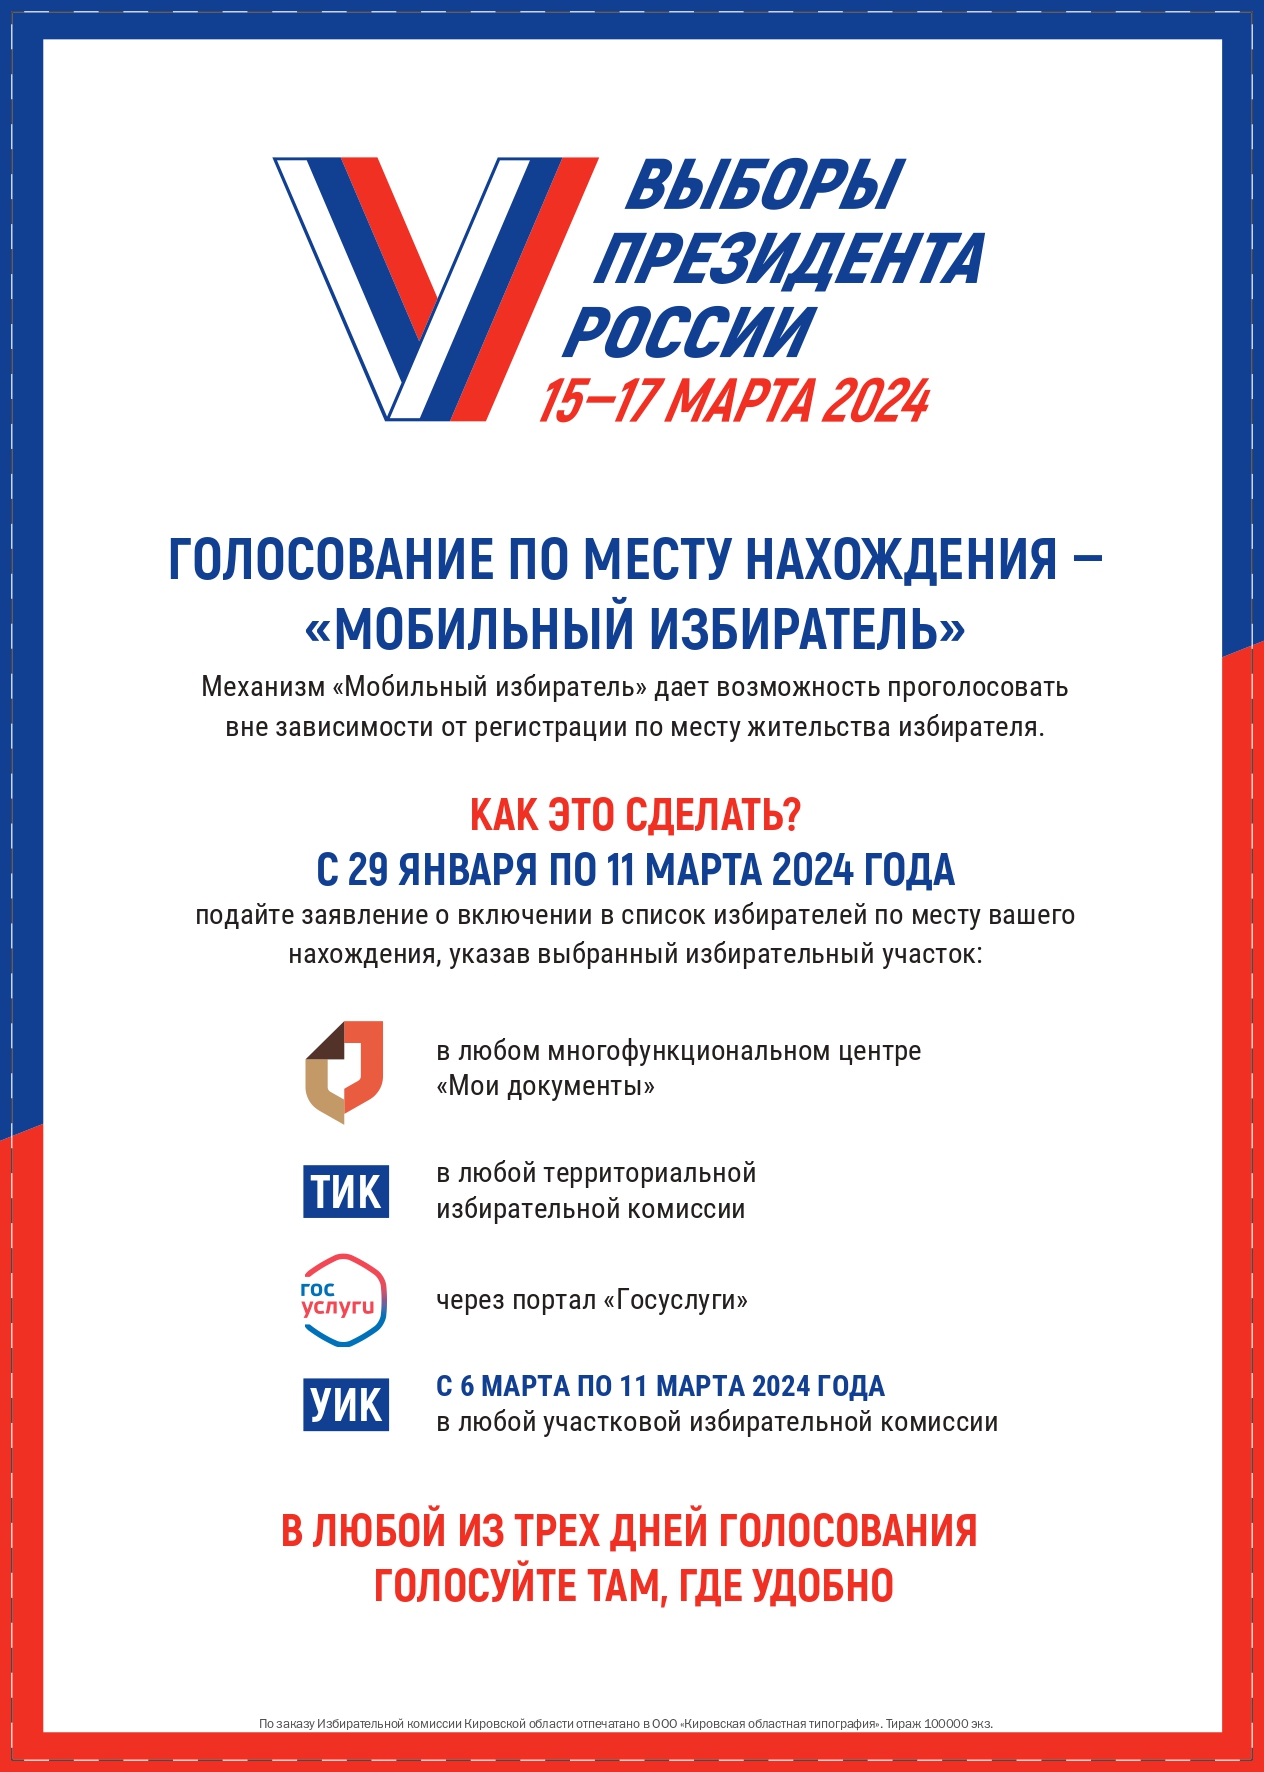 Выборы Президента России 15-17 марта 2024 года..